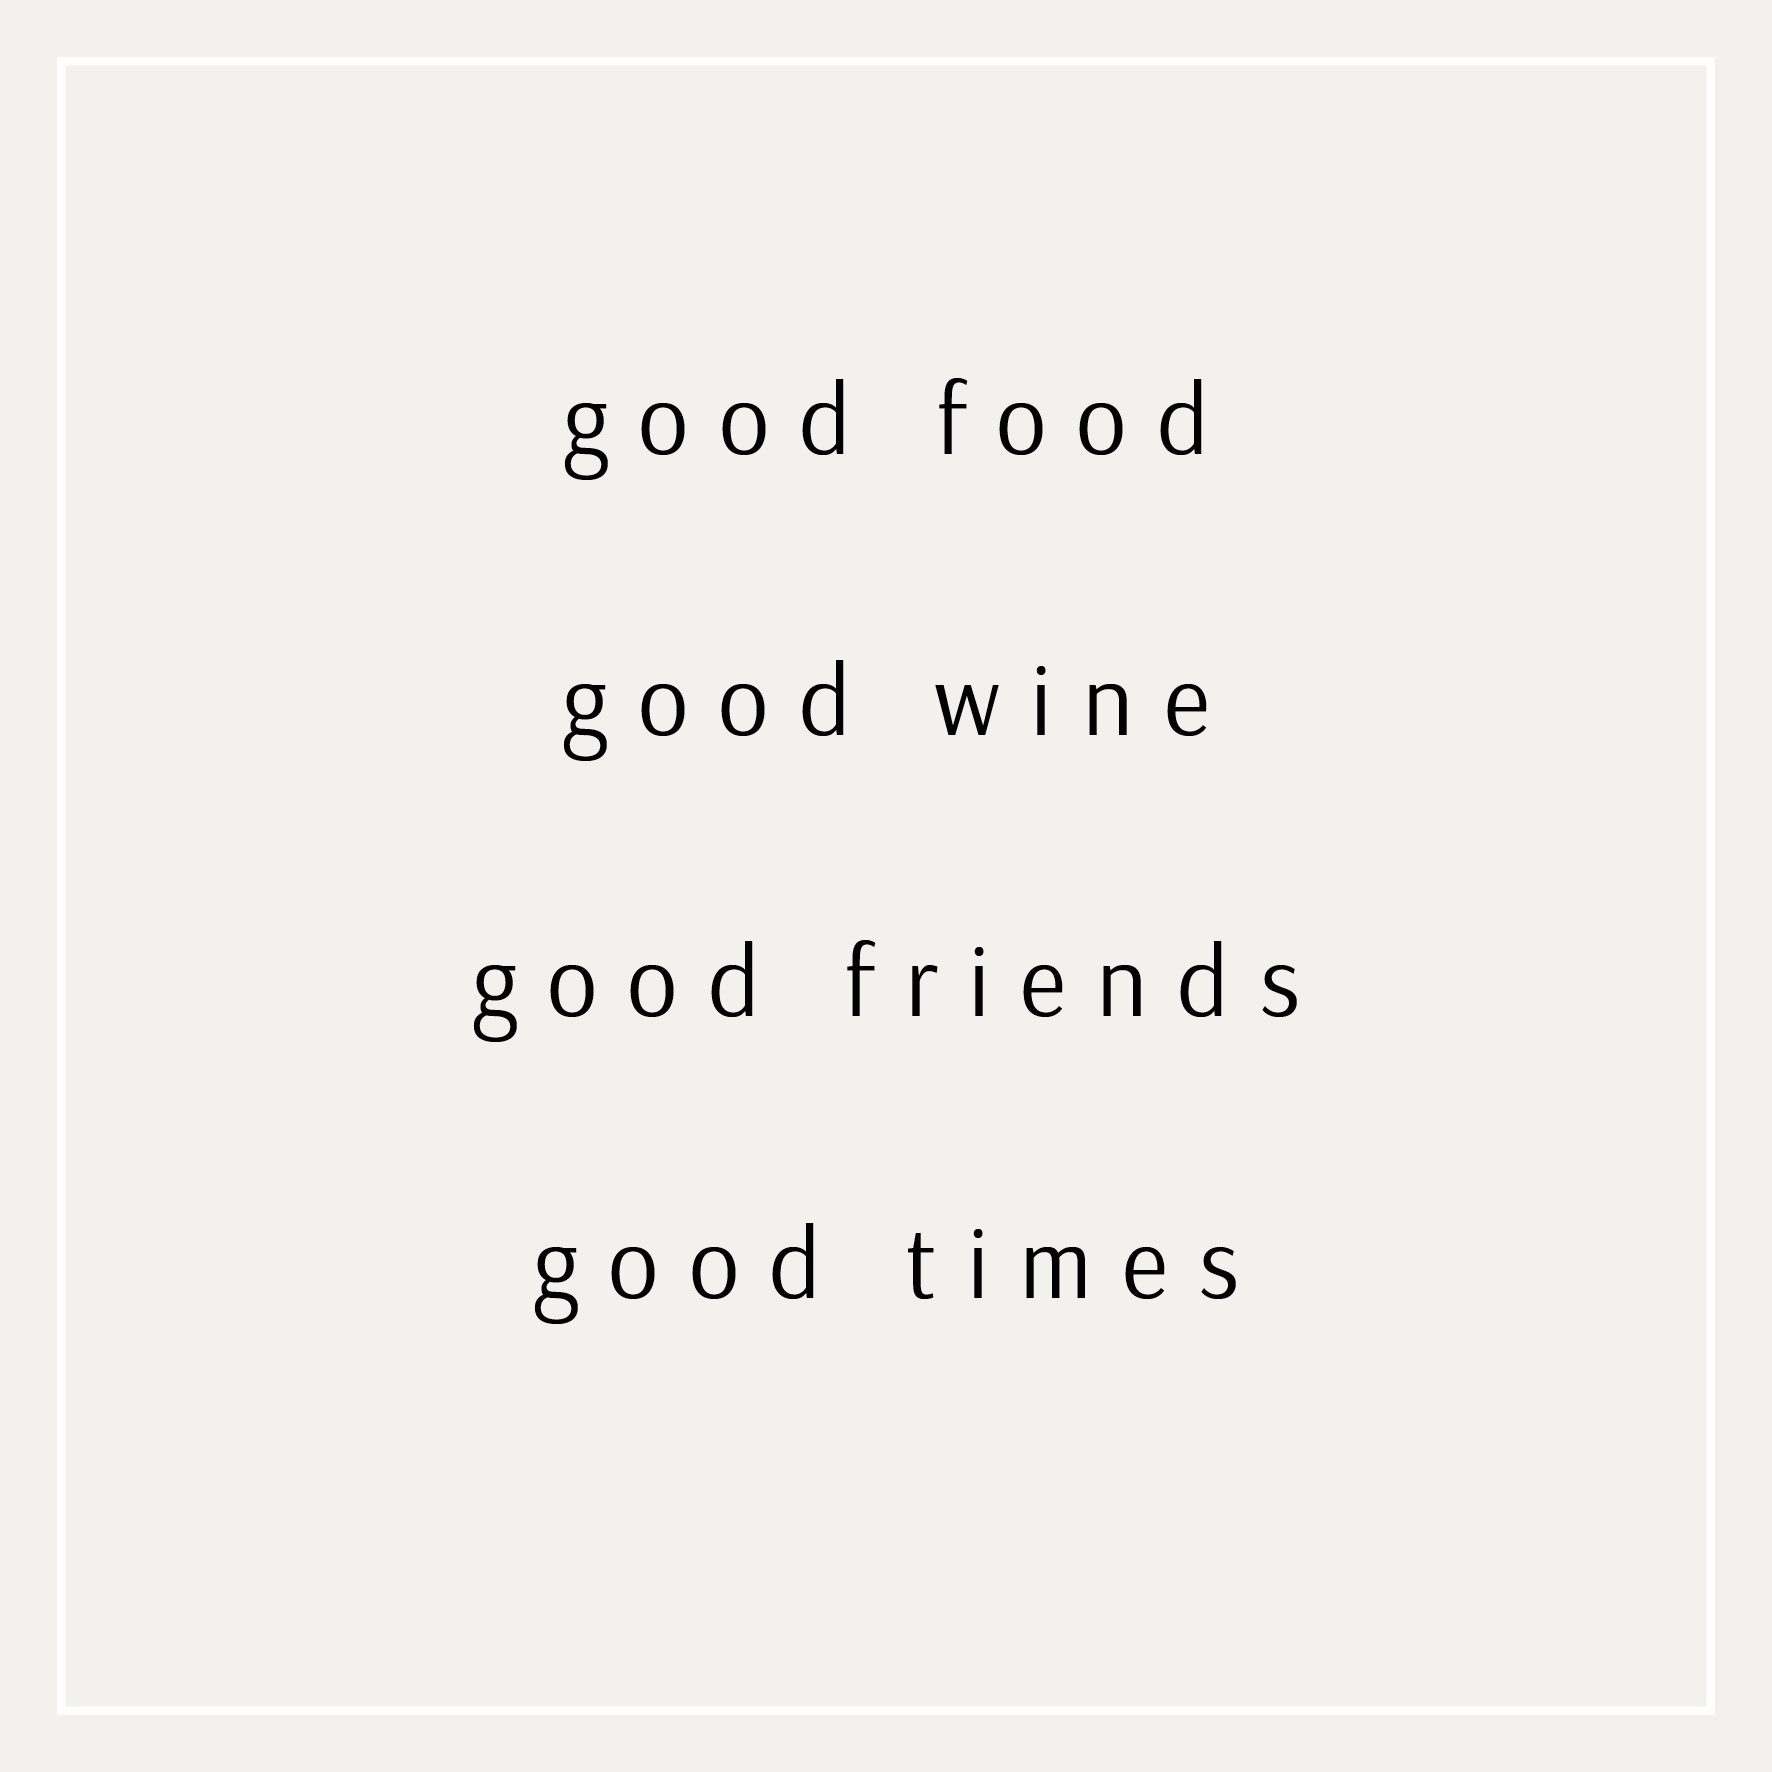 good food, good wine, good friends, good times